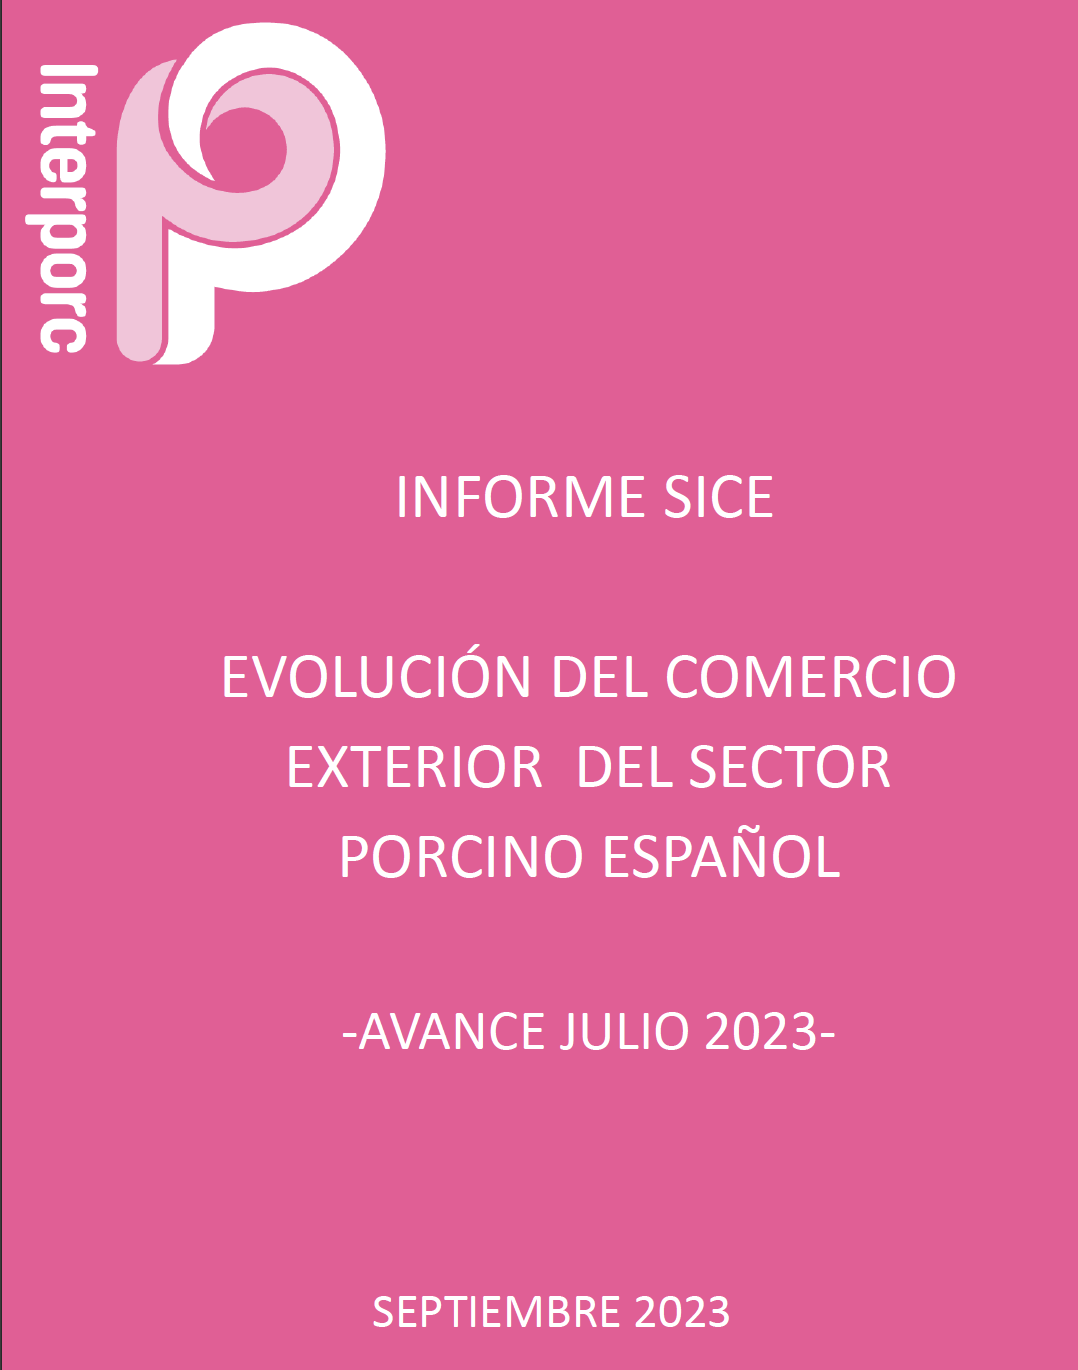 EVOLUCIÓN DEL COMERCIO EXTERIOR DEL SECTOR PORCINO ESPAÑOL JULIO 2023 (SEPTIEMBRE 2023)